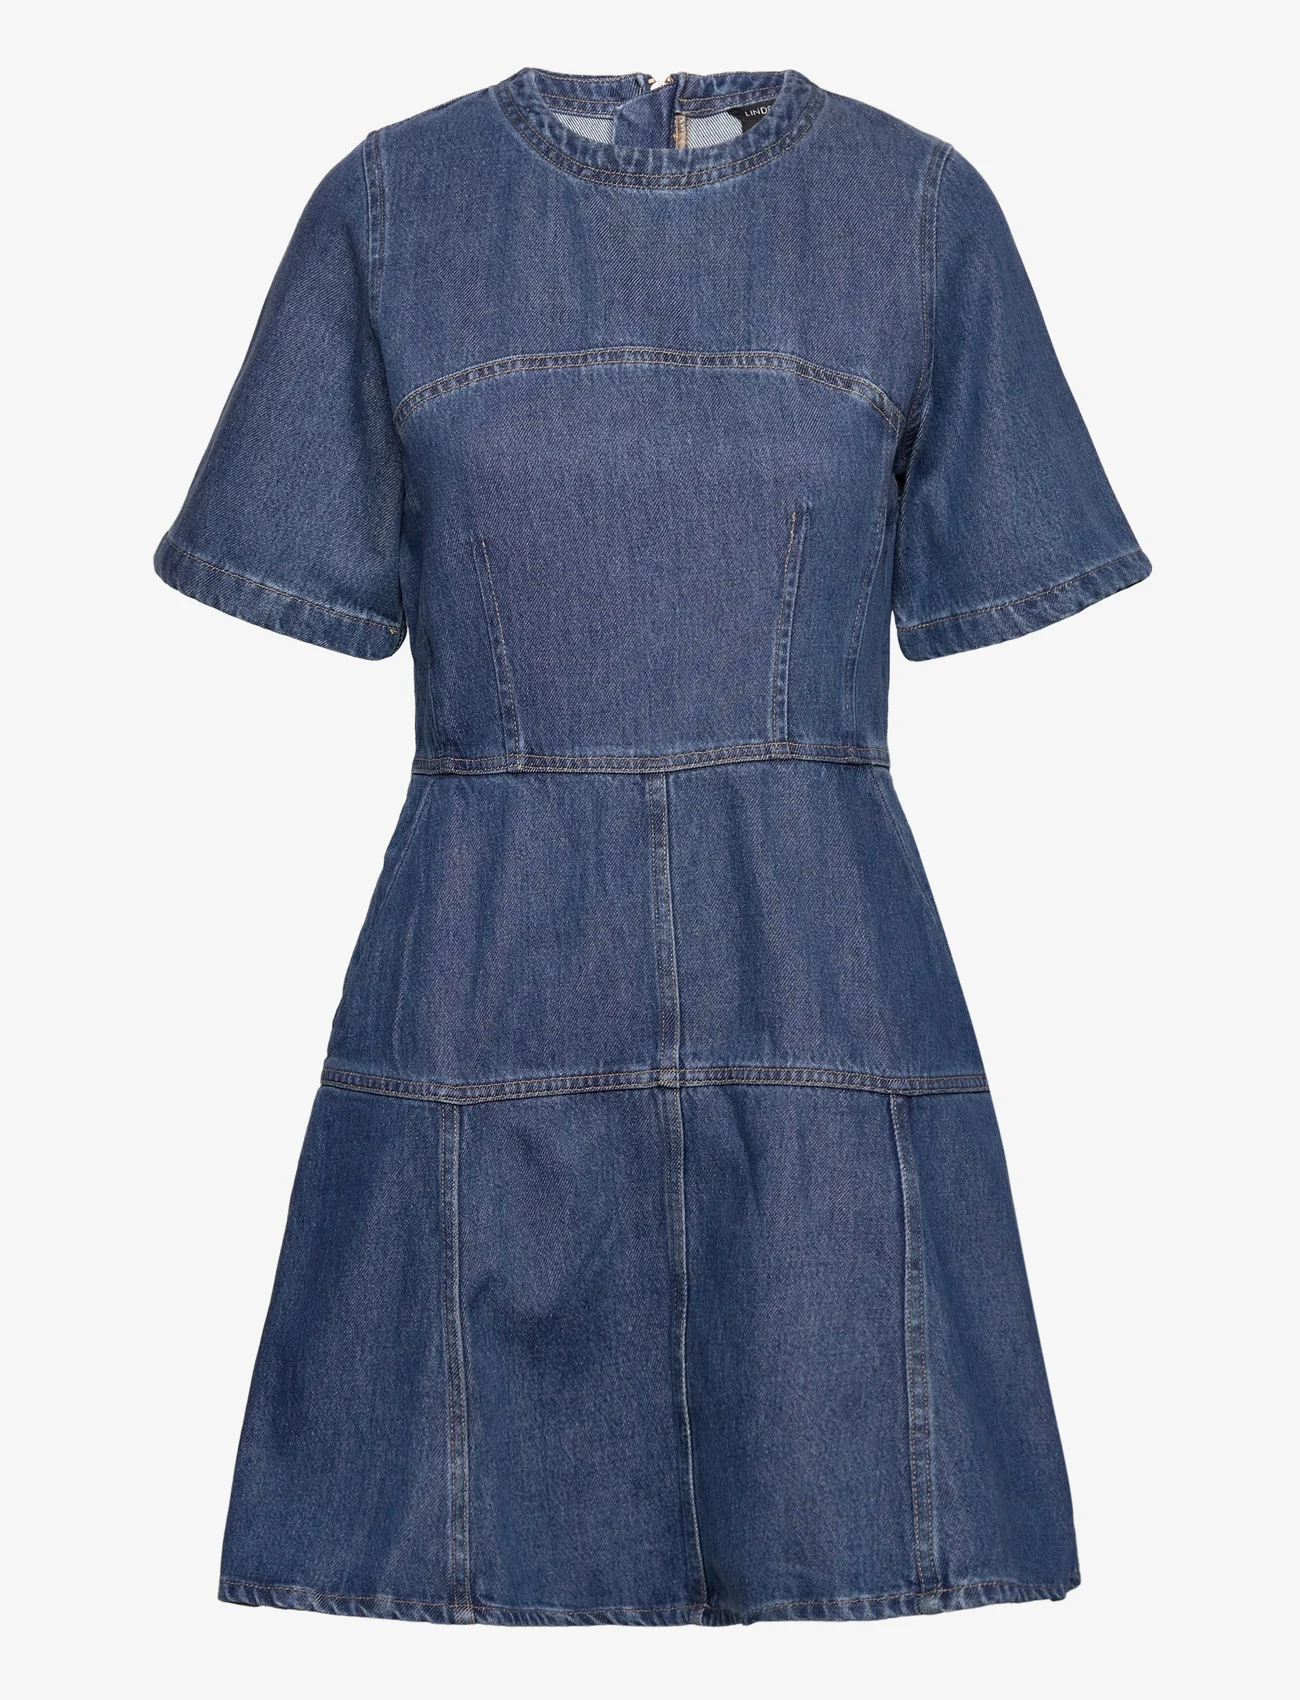 Lindex - Dress Melinda - jeansklänningar - denim blue - 0